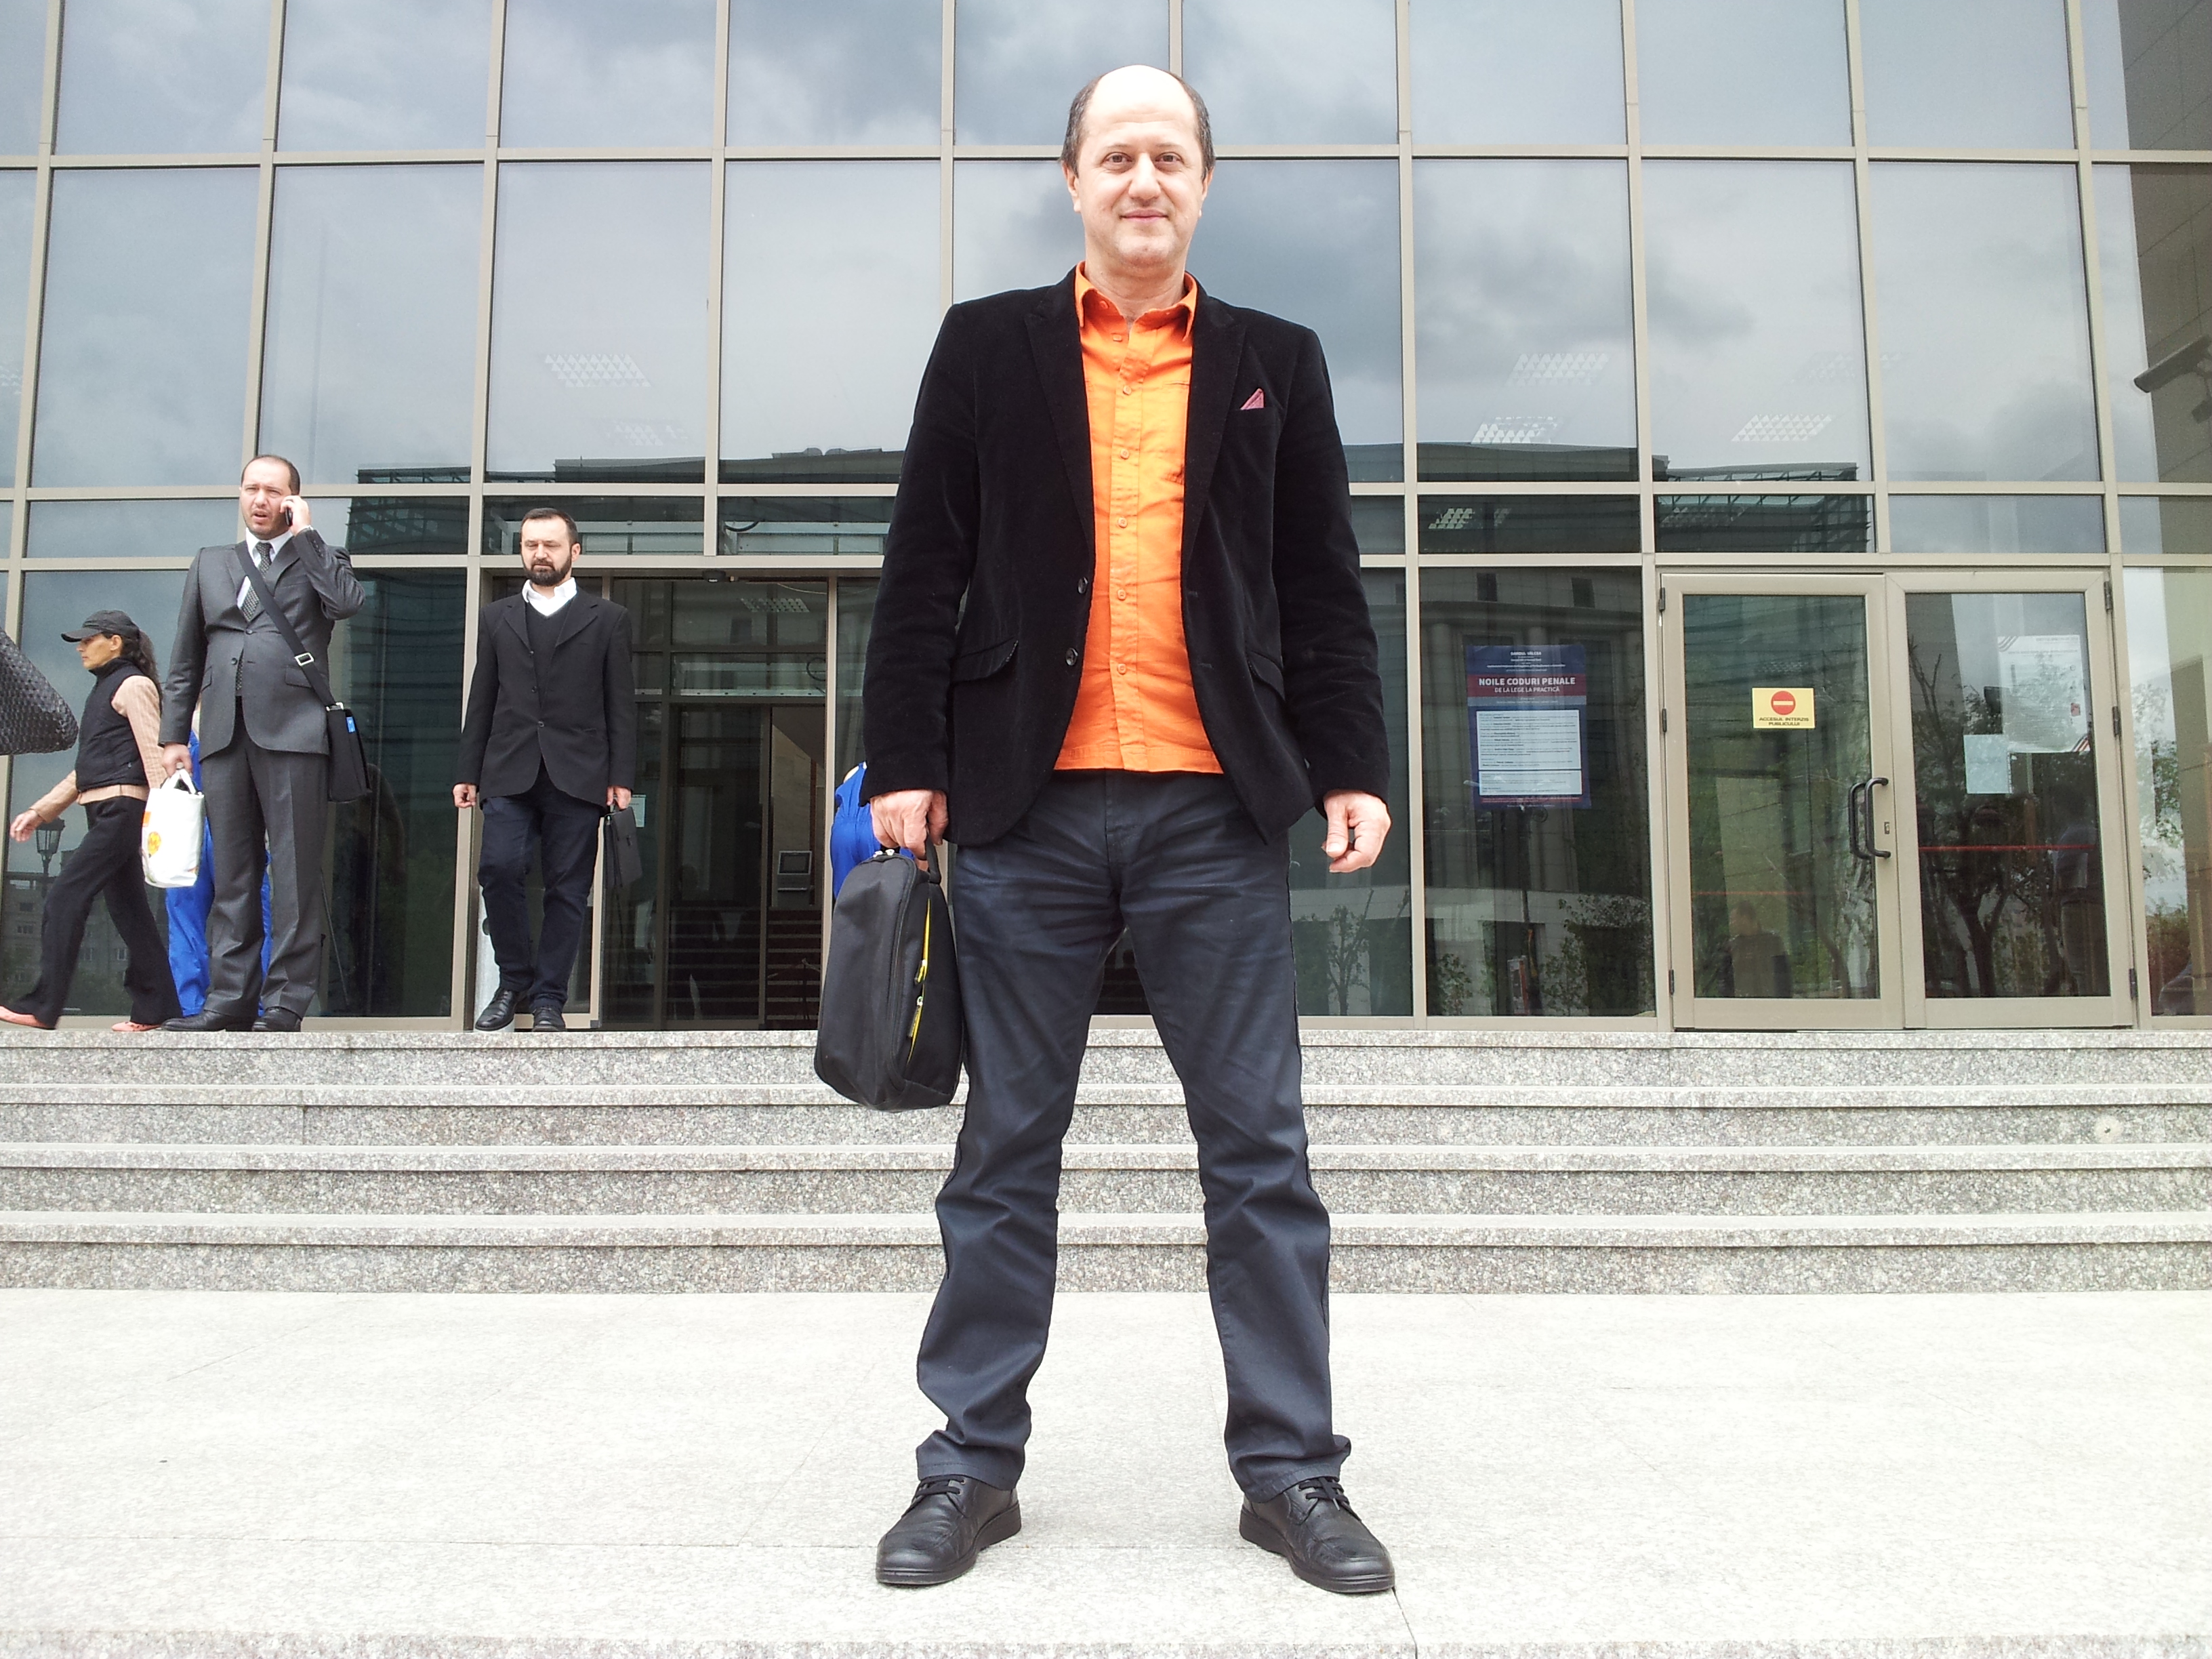 Profesorul de yoga a deschis procesul la Tribunalul Bucuresti